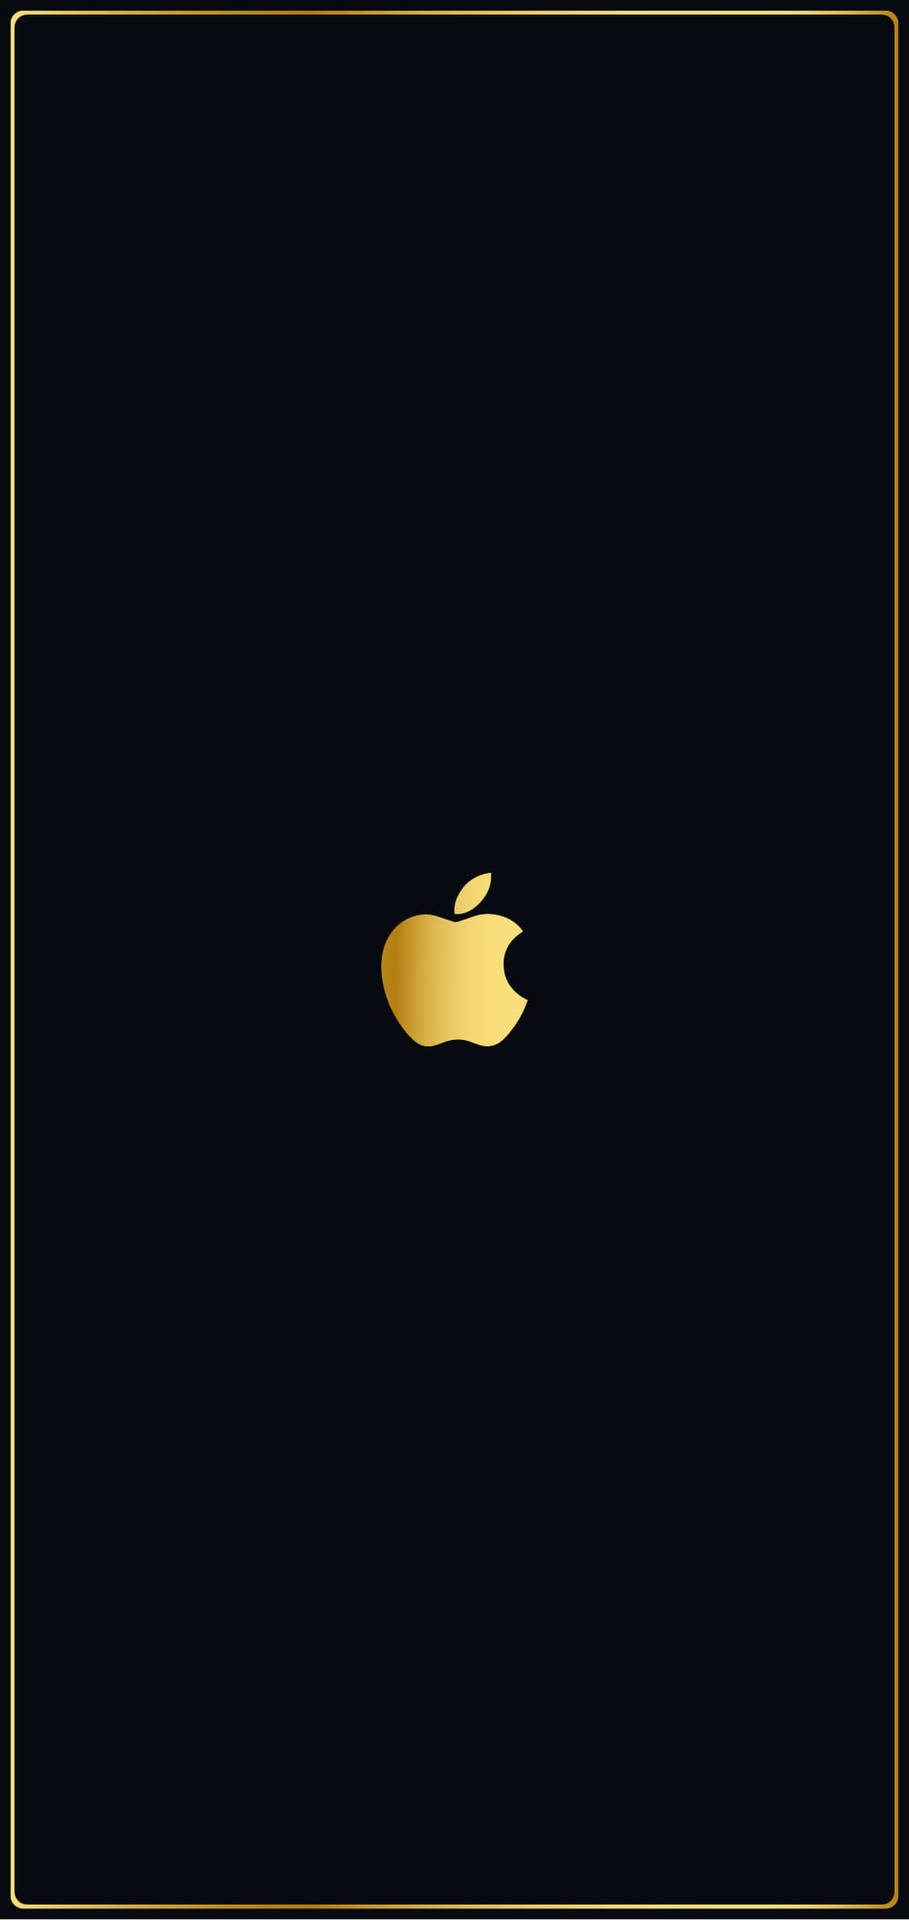 Full Hd Golden Apple Background